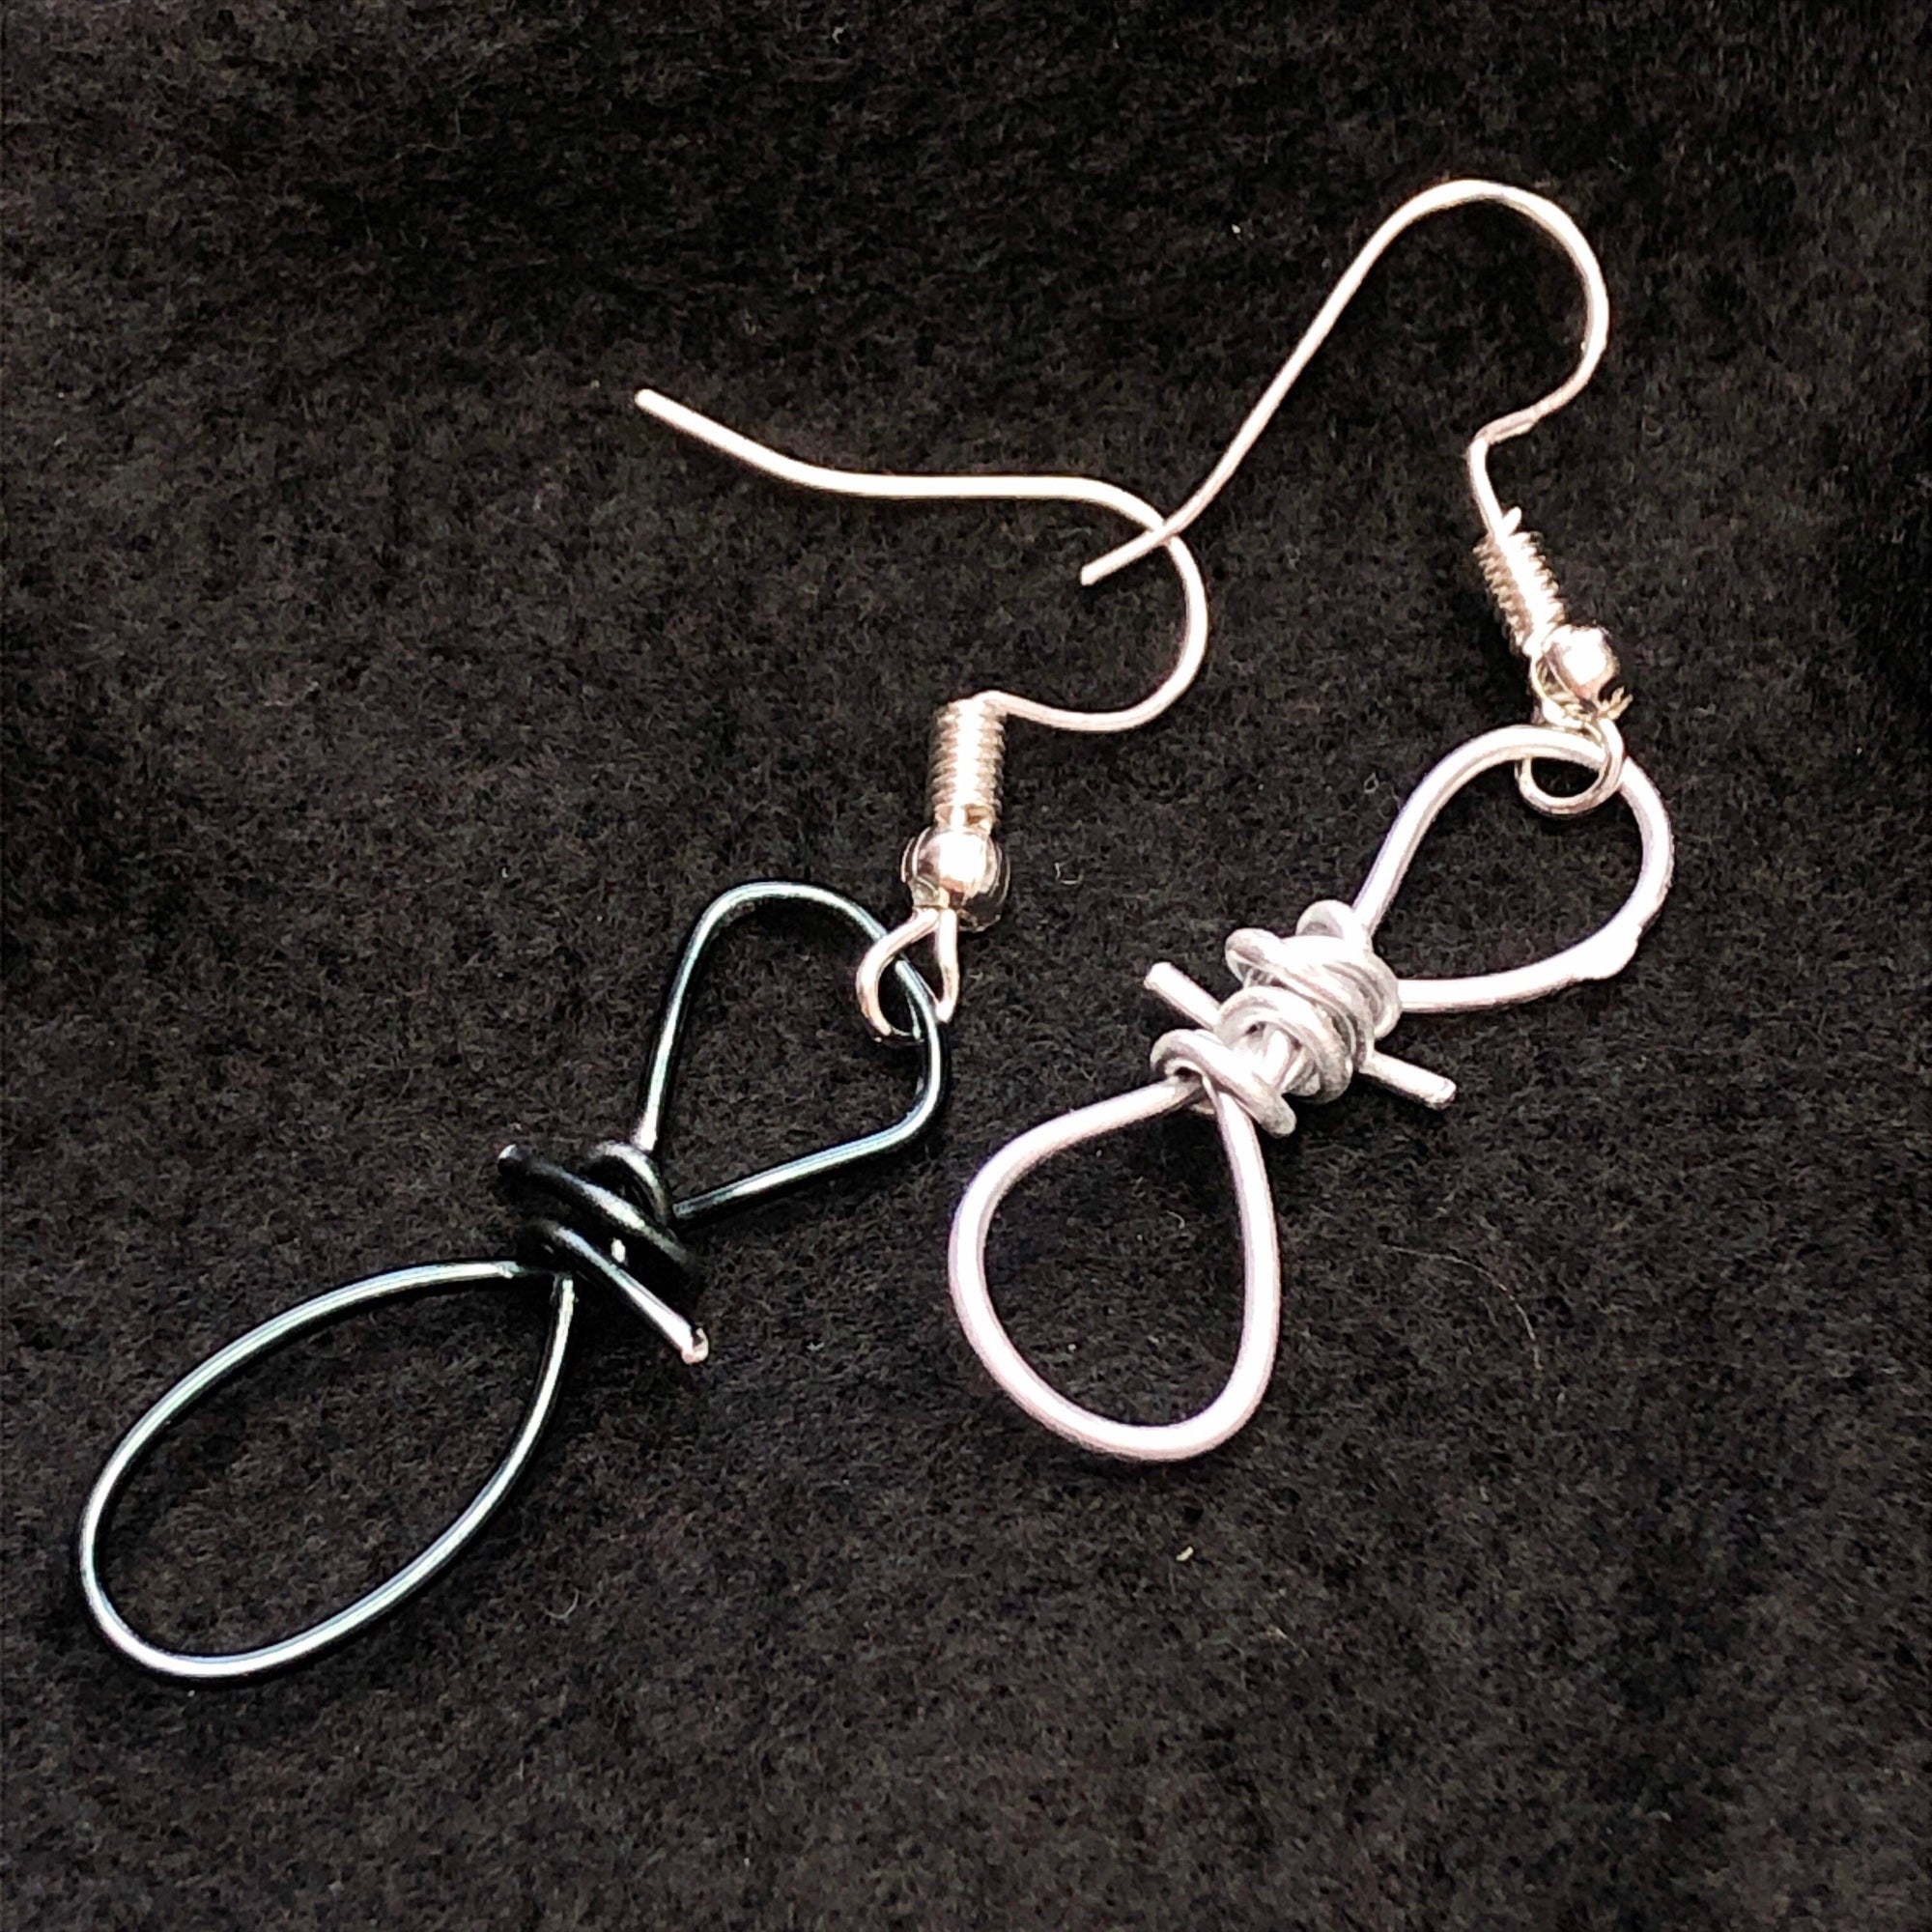 Barbed wire grunge earrings  • Alt earrings grunge jewelry • Grunge earrings set egirl earrings • Alternative earrings • Punk earrings